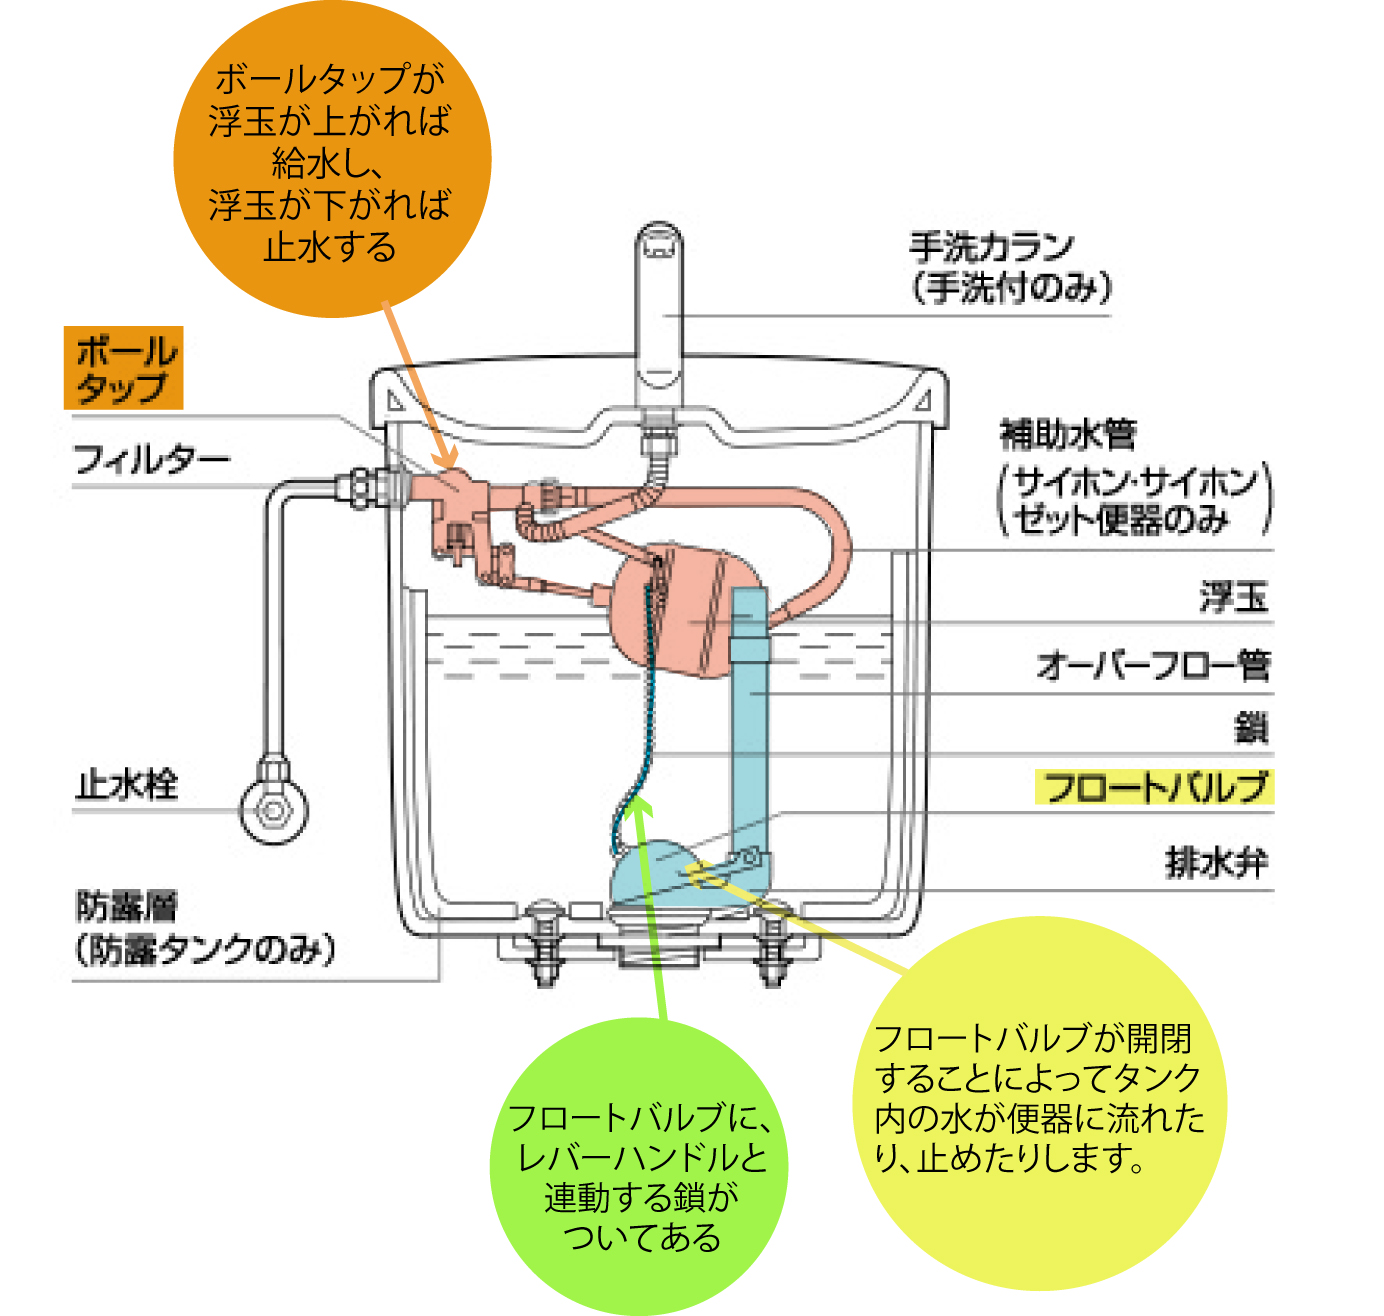 TOTOトイレのトラブル発生の対応について TOTOトイレのトラブル発生の対応について 神戸・芦屋・西宮の